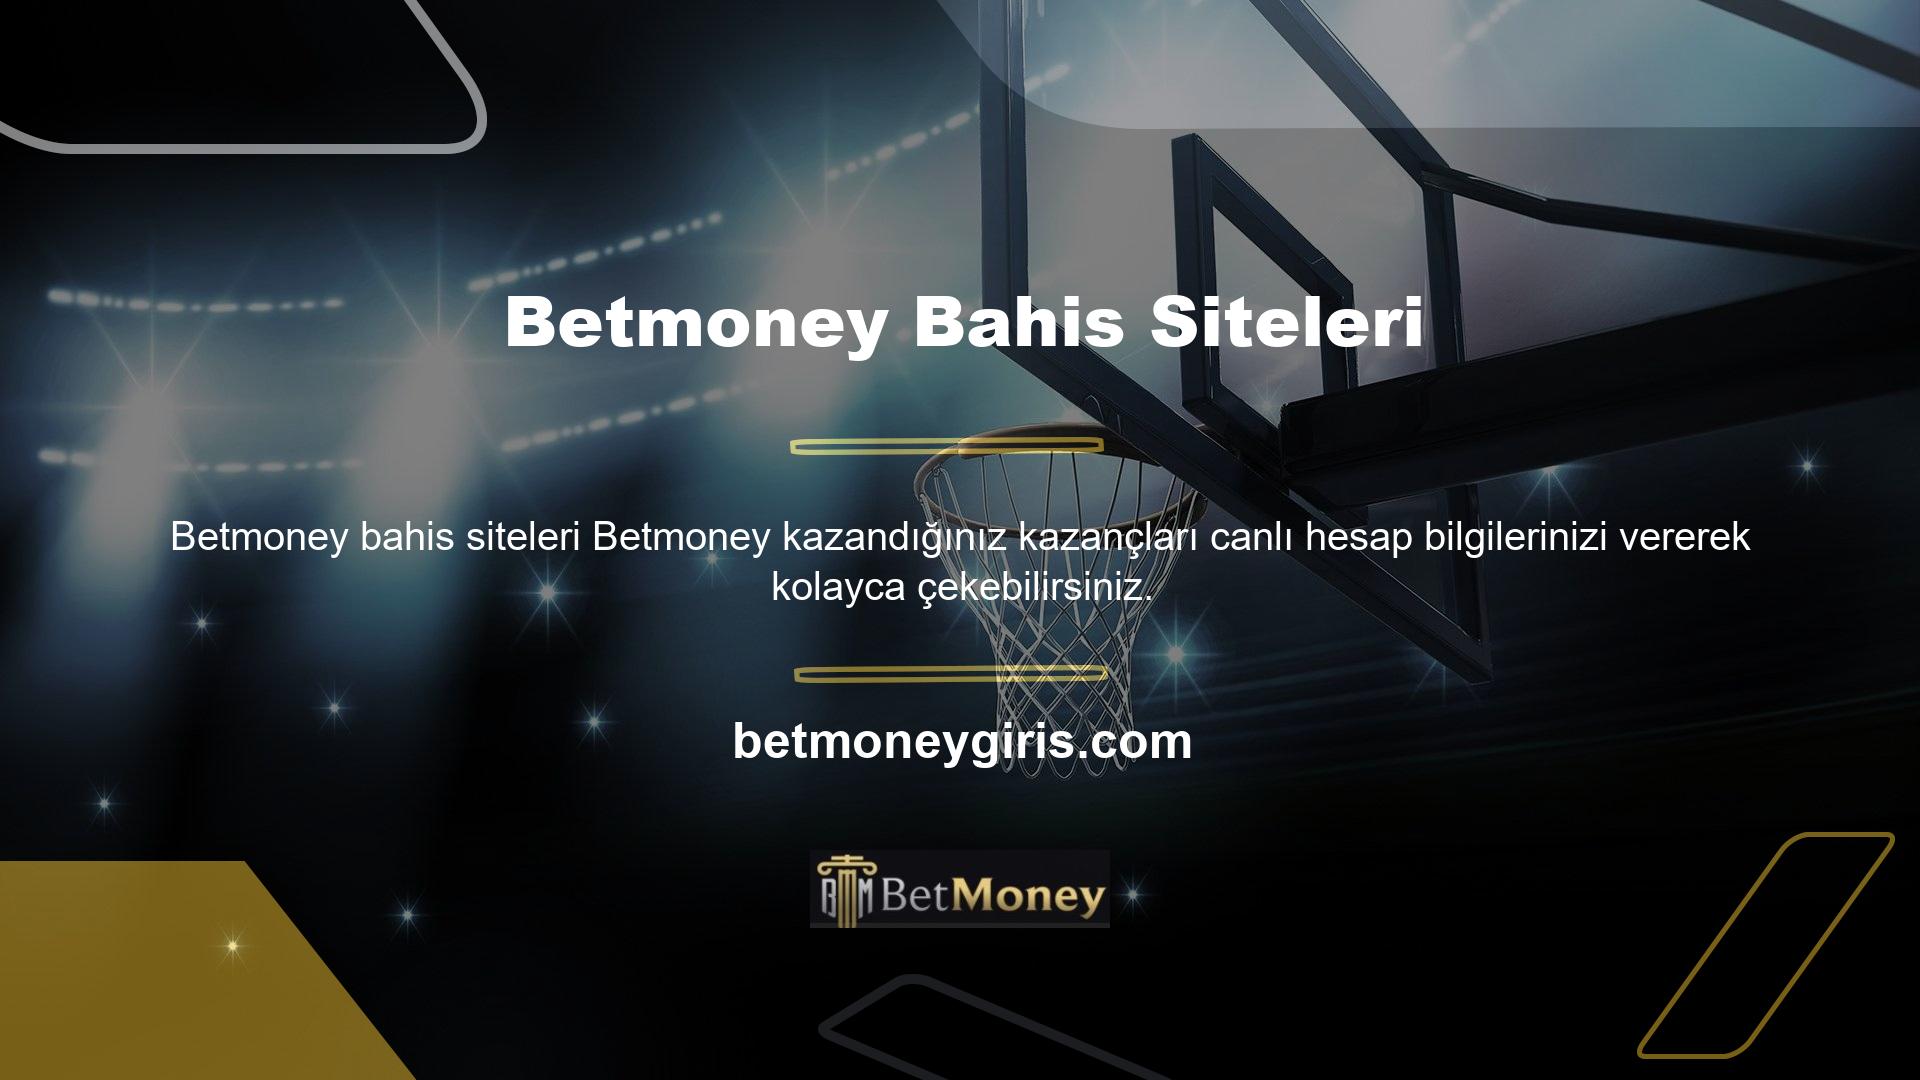 Betmoney Yatırım Yaklaşımı Betmoney bahis sitesi, kullanıcıların ek geliri garanti ederken eğlenmesine olanak tanıyan casino ve canlı casino seçenekleri sağlama konusunda uzmanlaşmıştır